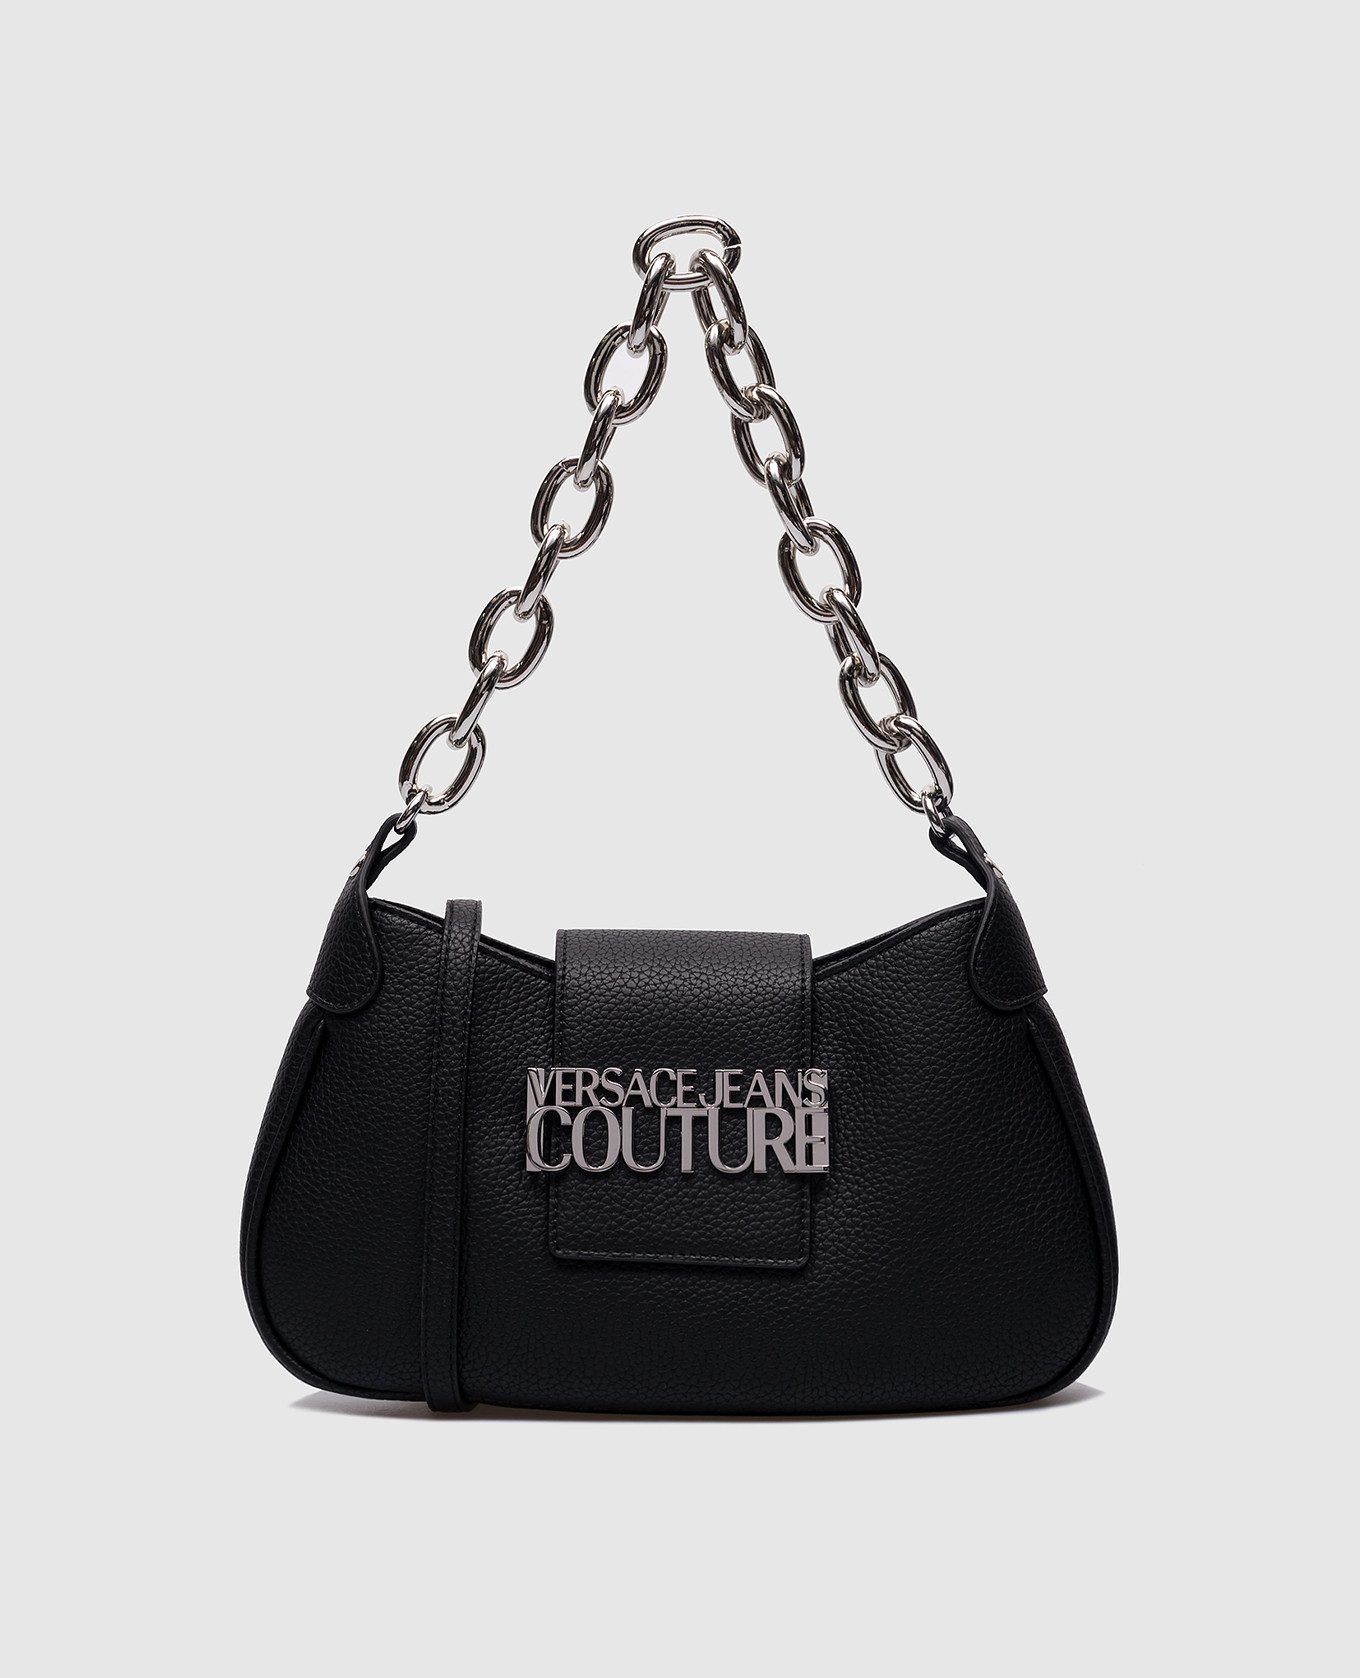 Черная сумка с металлическим логотипом.